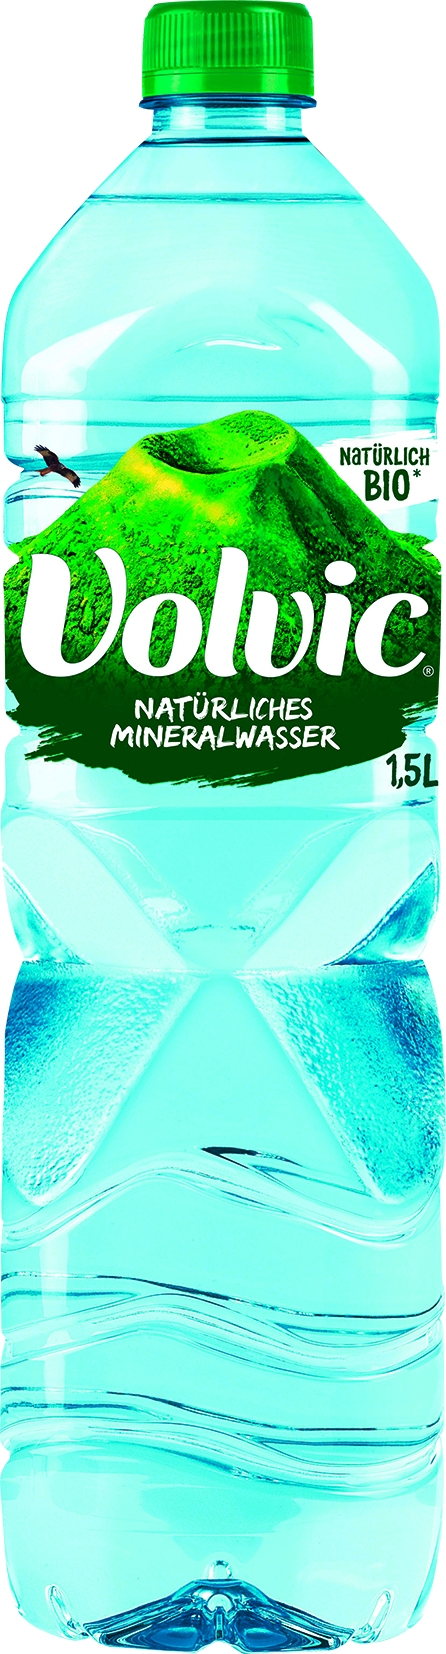 Mineralwasser Naturelle 6x1,5lt PET